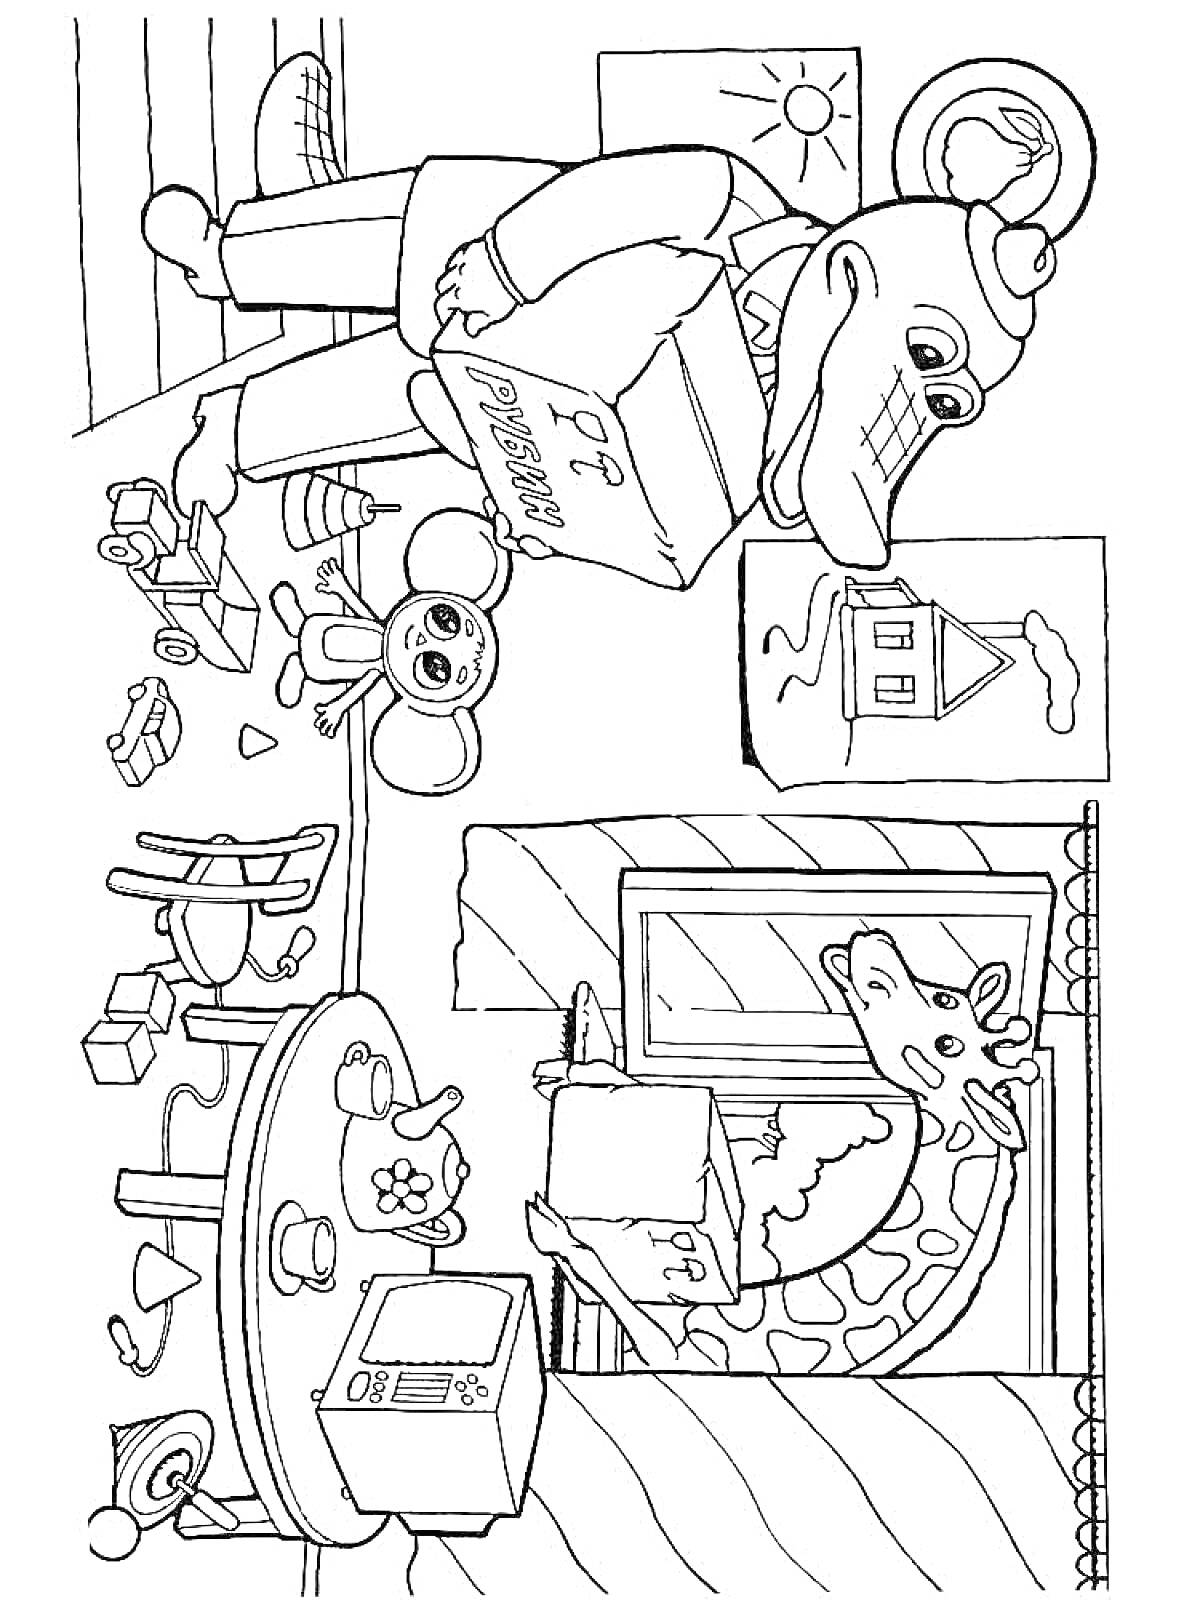 Раскраска Крокодил Гена с книгой, Чебурашка, жираф у окна, дом, солнце, стол с микроволновкой, посуда и игрушки